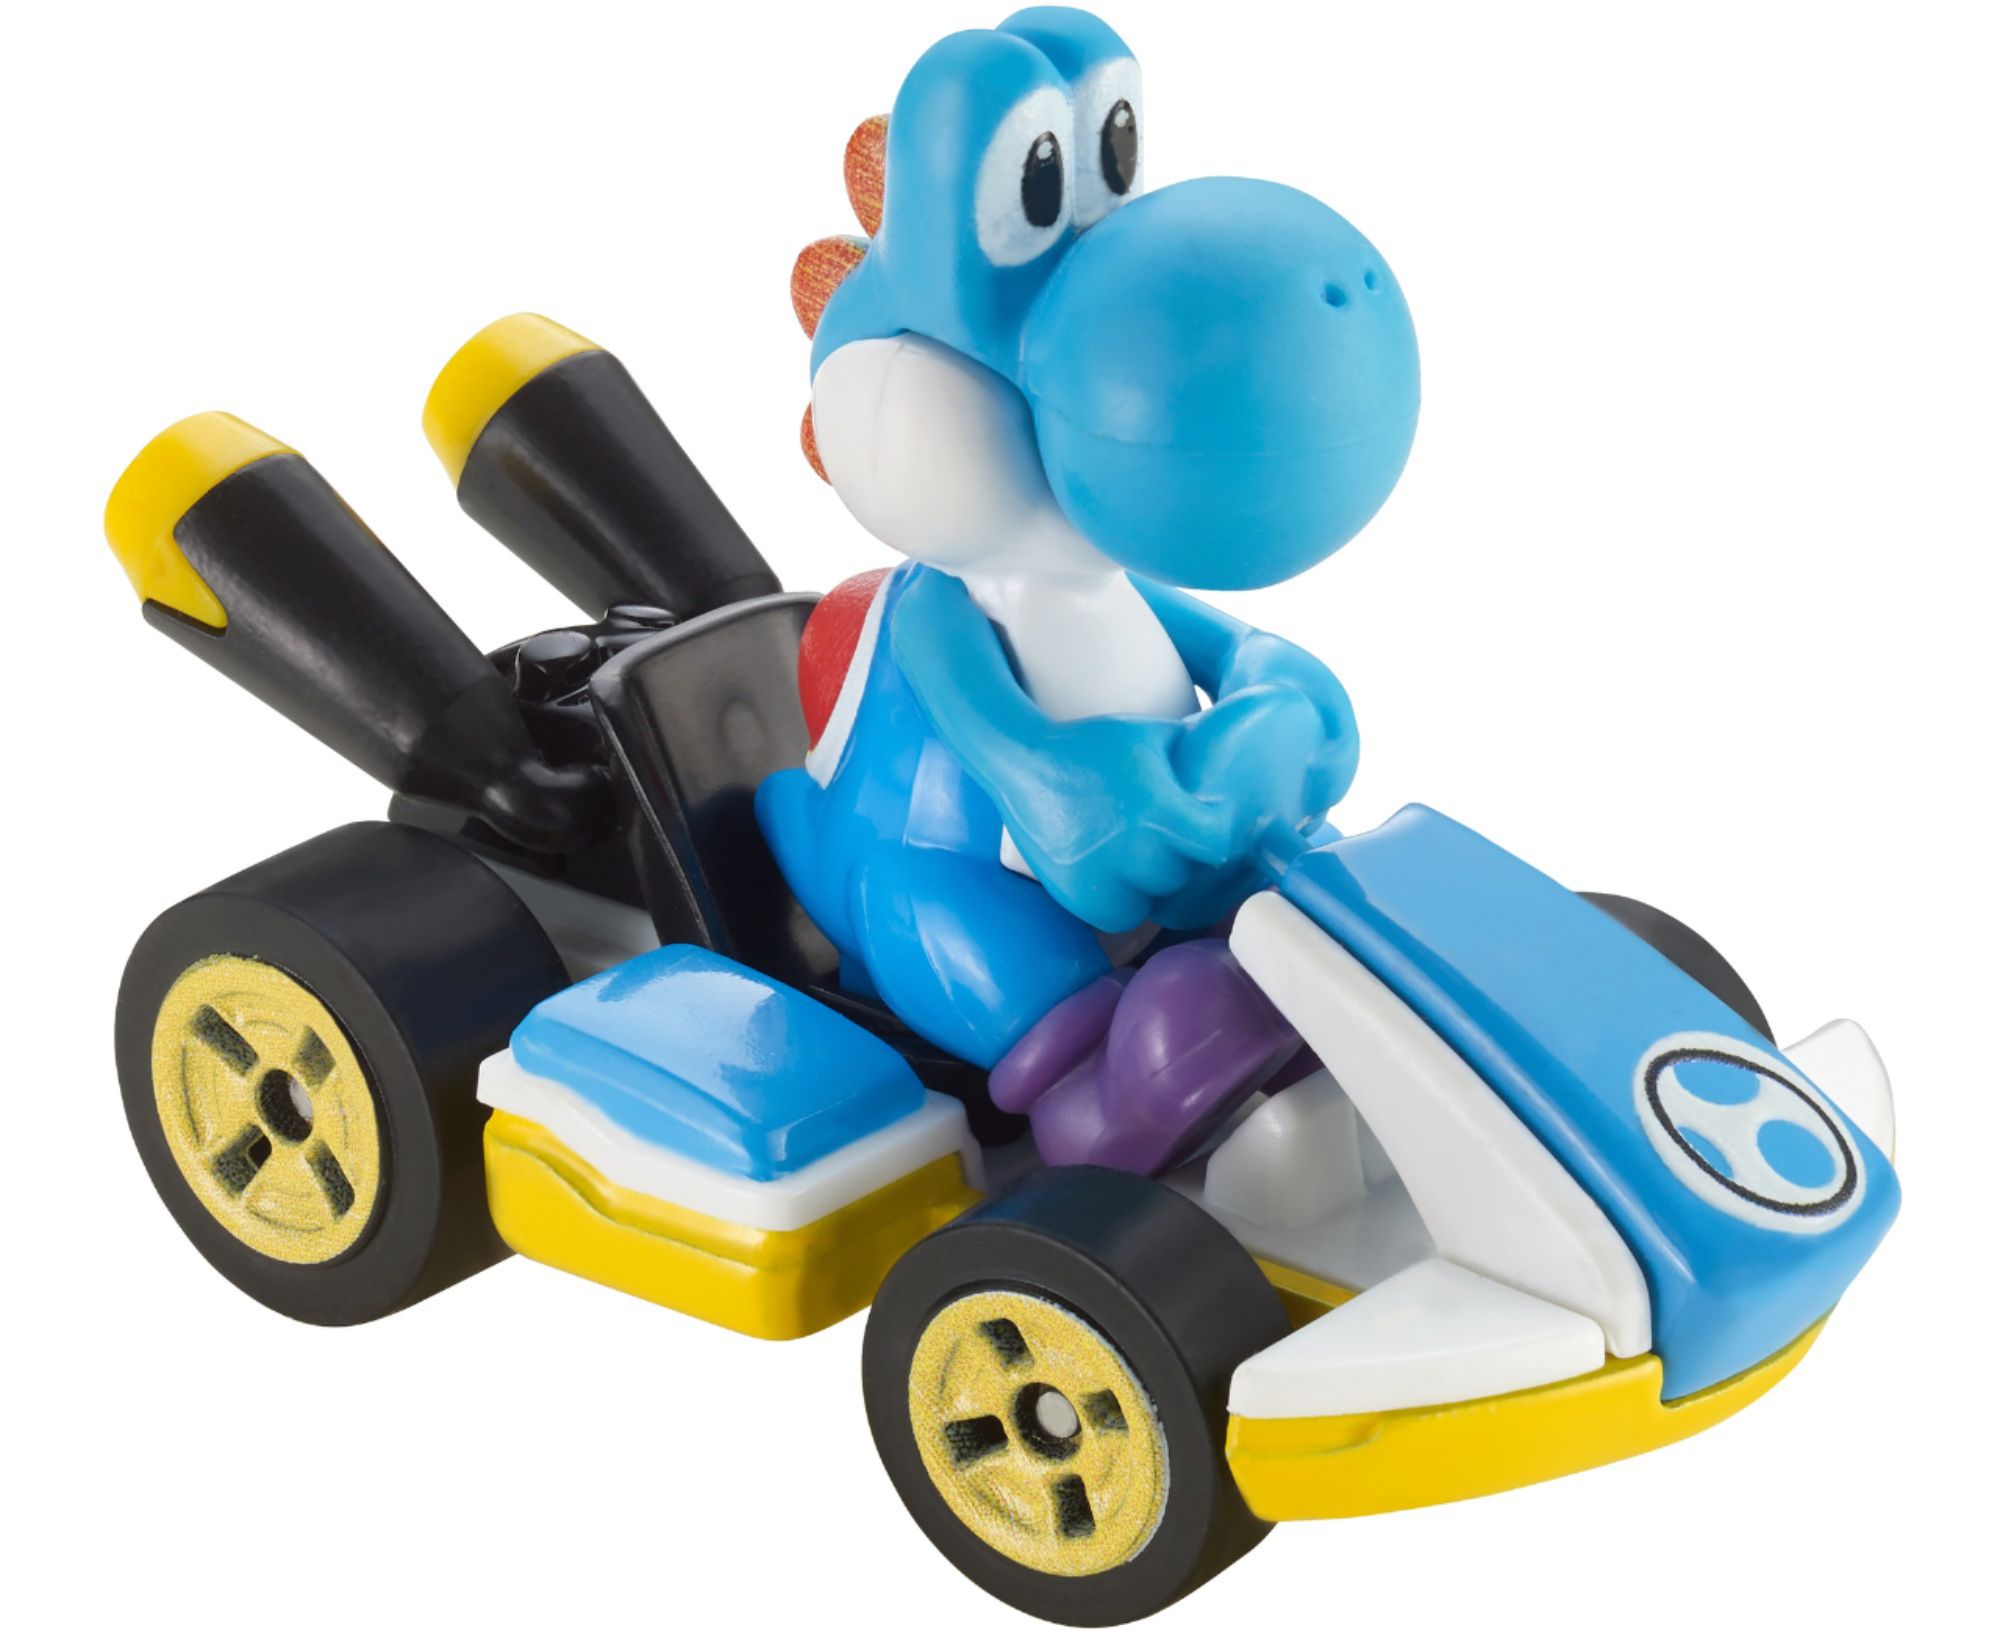 Hot Wheels Mario Kart Vehicle 4-Pack Styles May Vary GWB36 - Best Buy